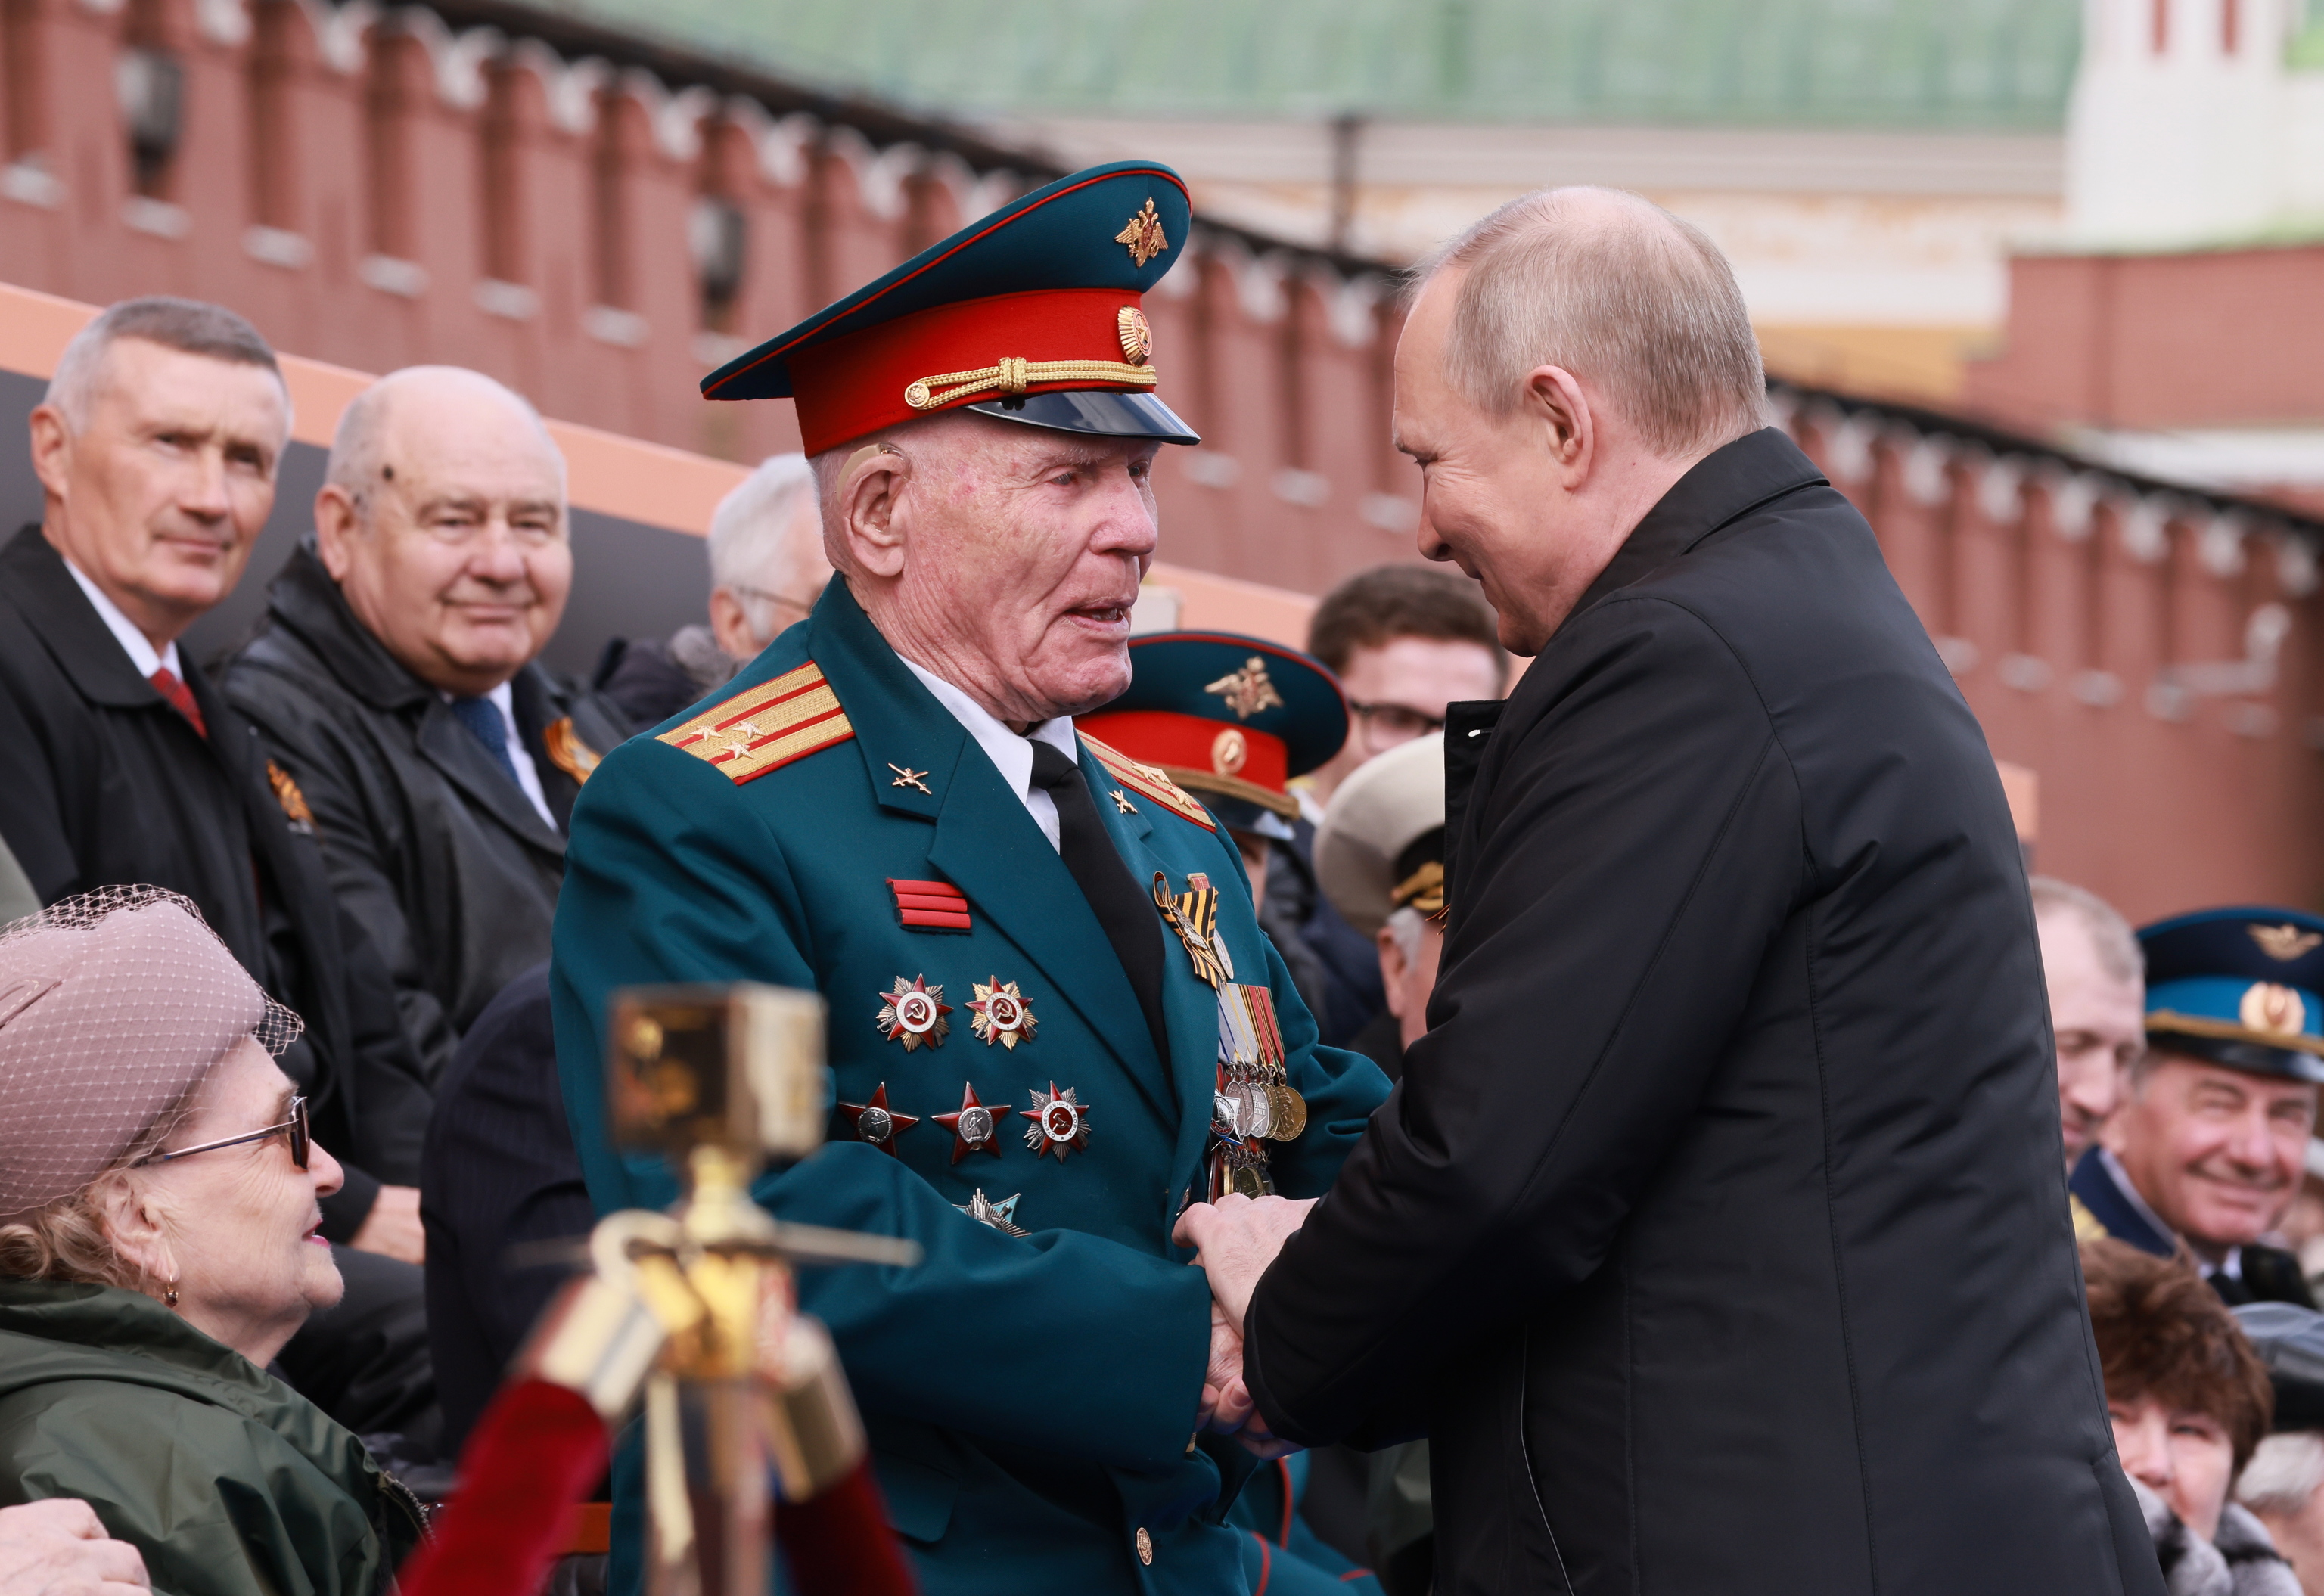 h-brido-reportero-t-lex-uniforme-ruso-militar-bolsa-directorio-george